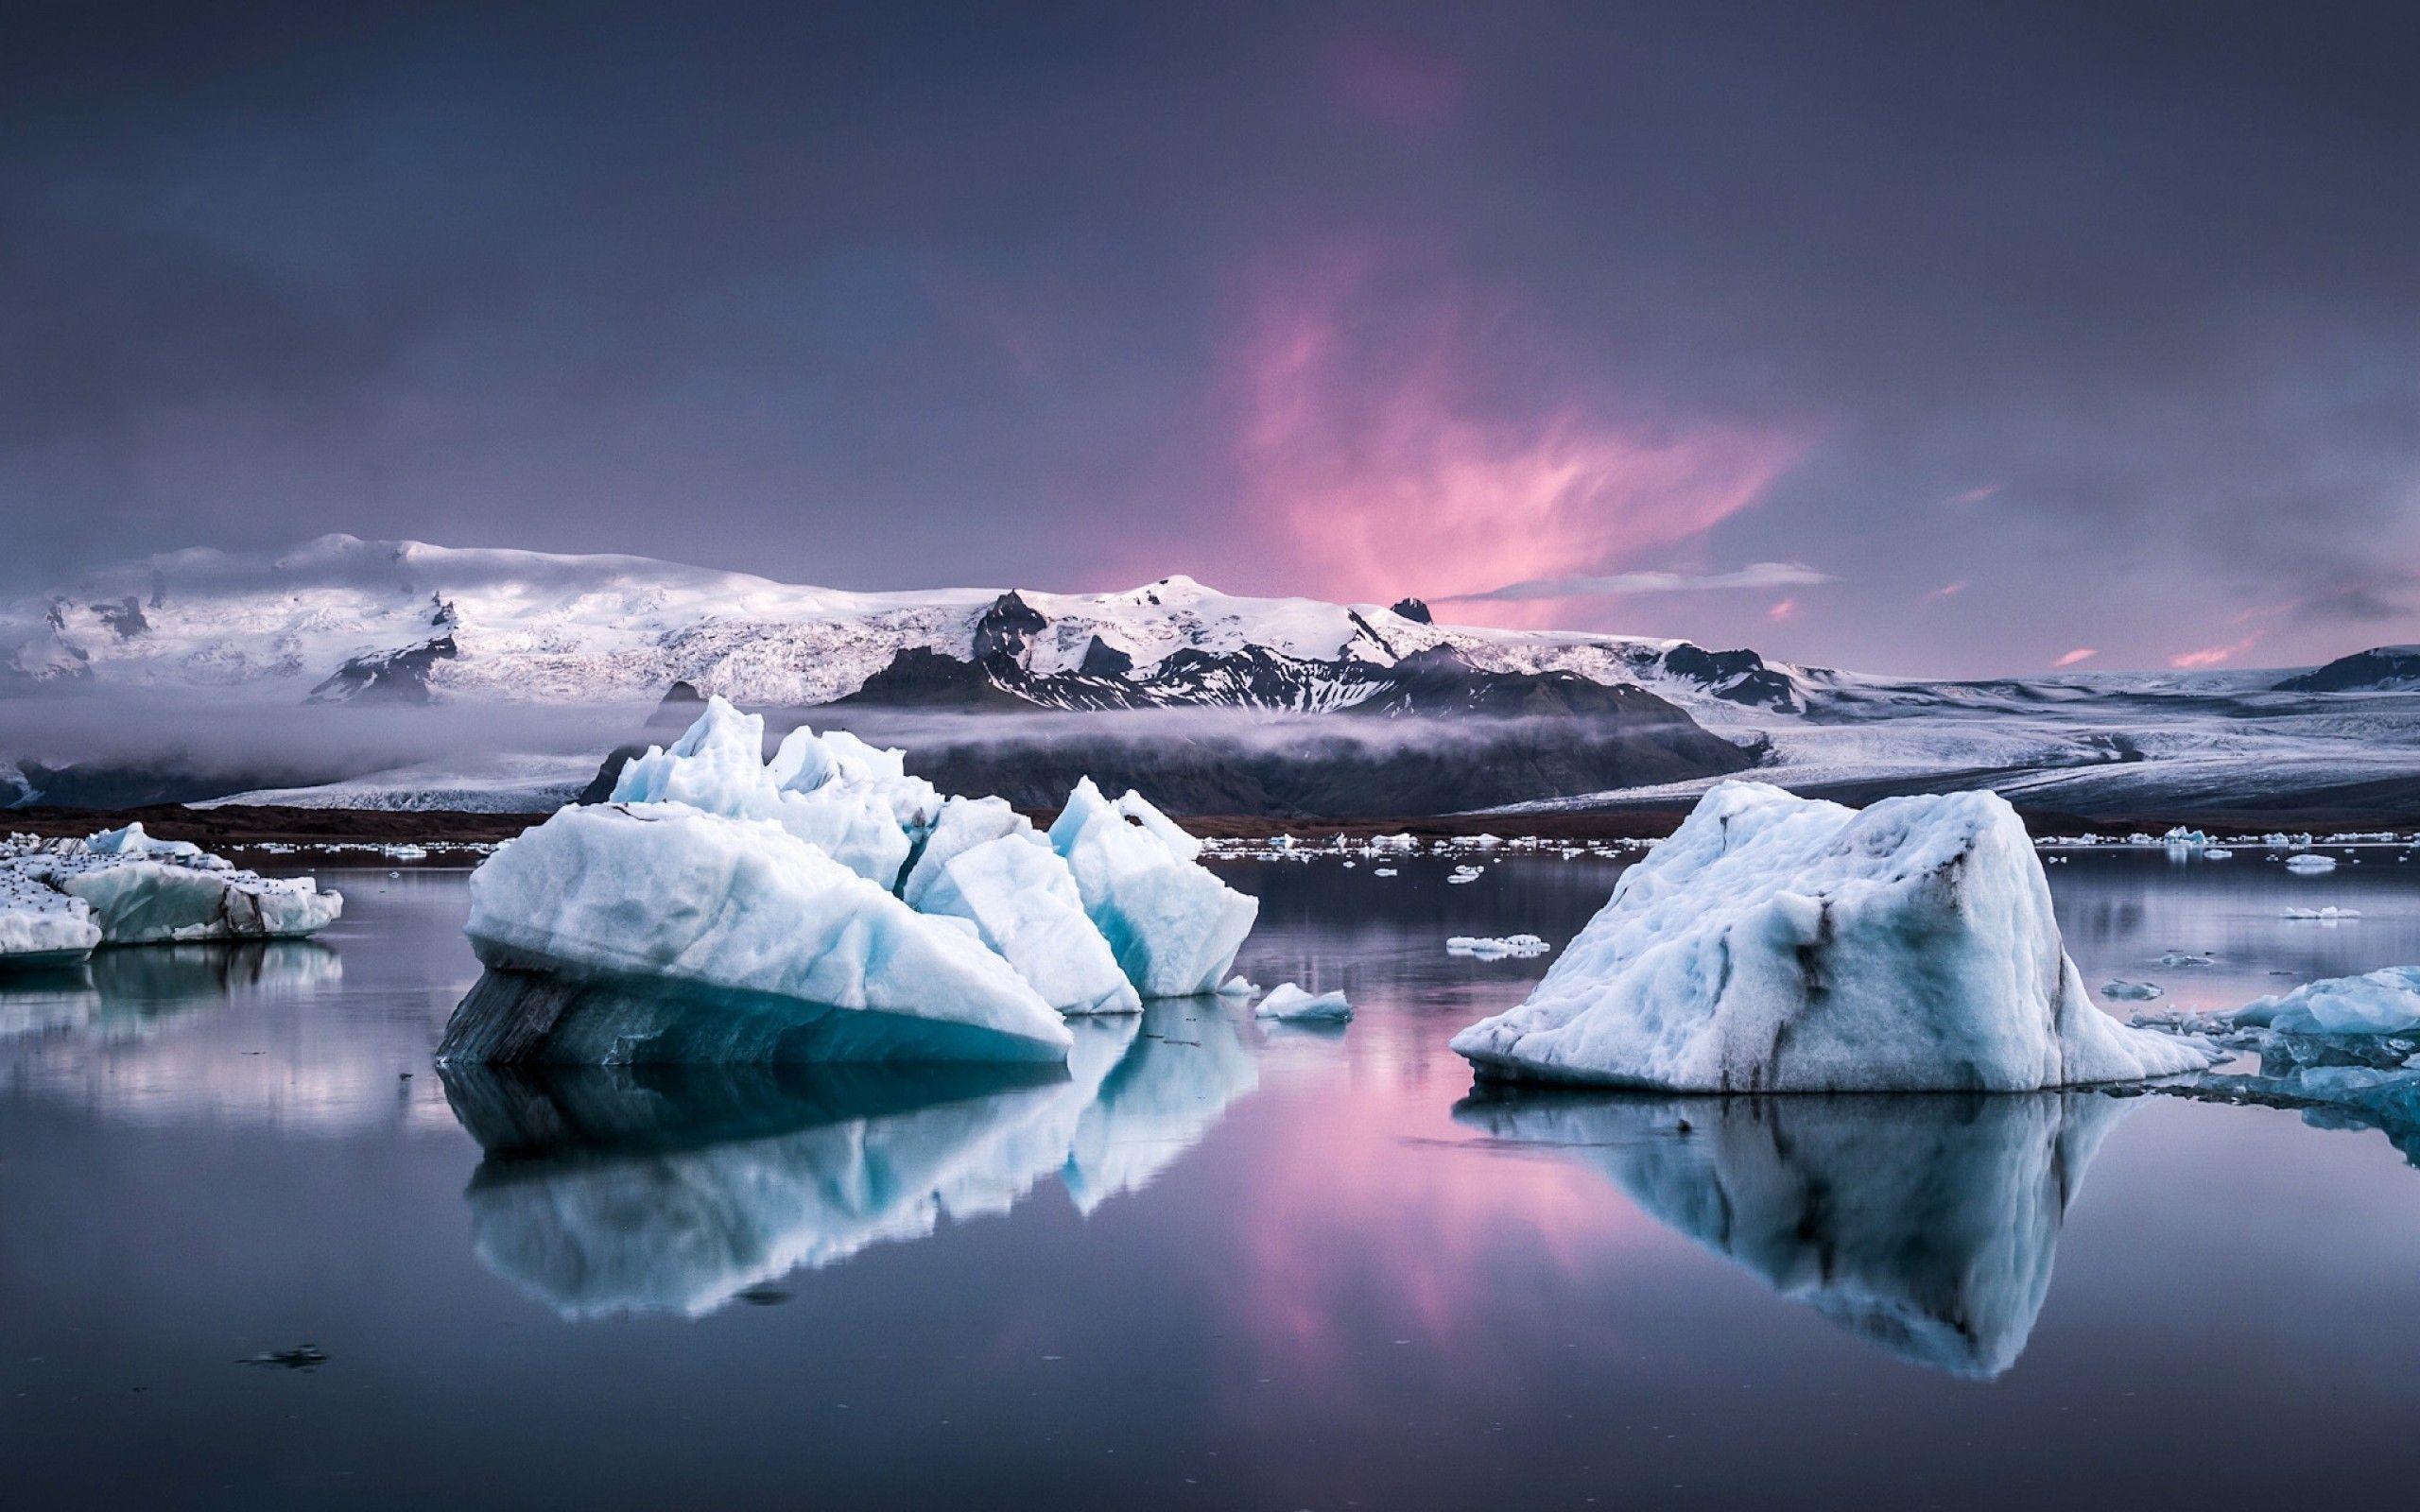 Tải miễn phí – Cảm nhận được phép màu từ những bức hình ảnh đẹp nhất của Iceland. Tải ngay những hình ảnh miễn phí này và bắt đầu trải nghiệm với mọi hình thức sáng tạo của bạn. Xem và chia sẻ những hình ảnh này với bạn bè và gia đình để cùng nhau thưởng thức tuyệt đẹp của thiên nhiên Iceland.